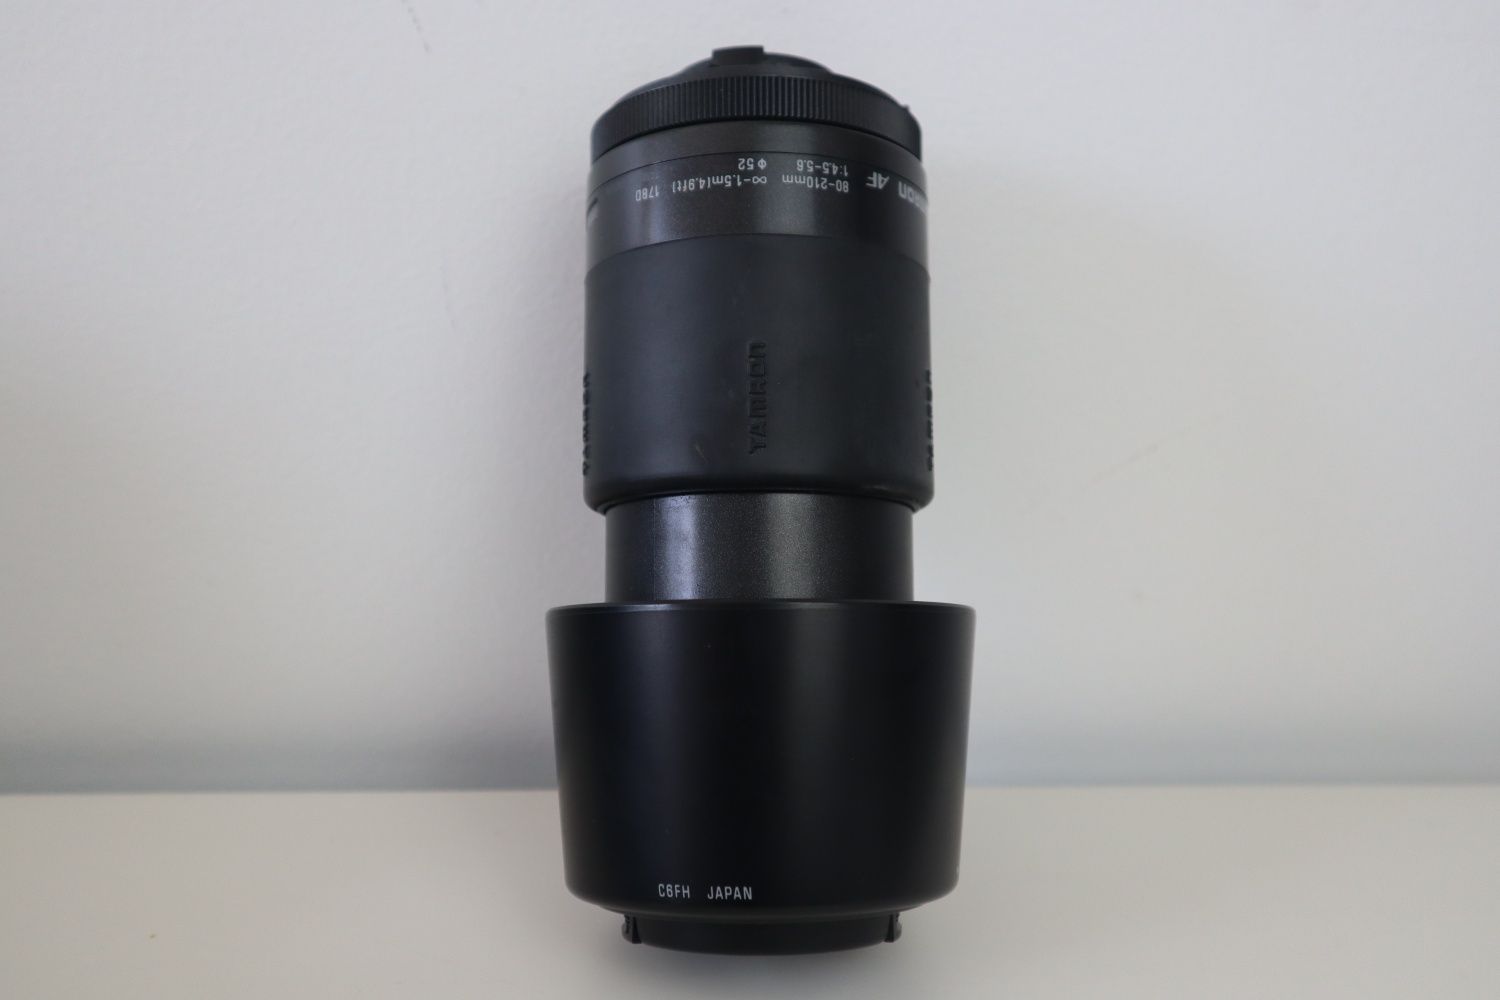 Nikon analógica F60 com lente